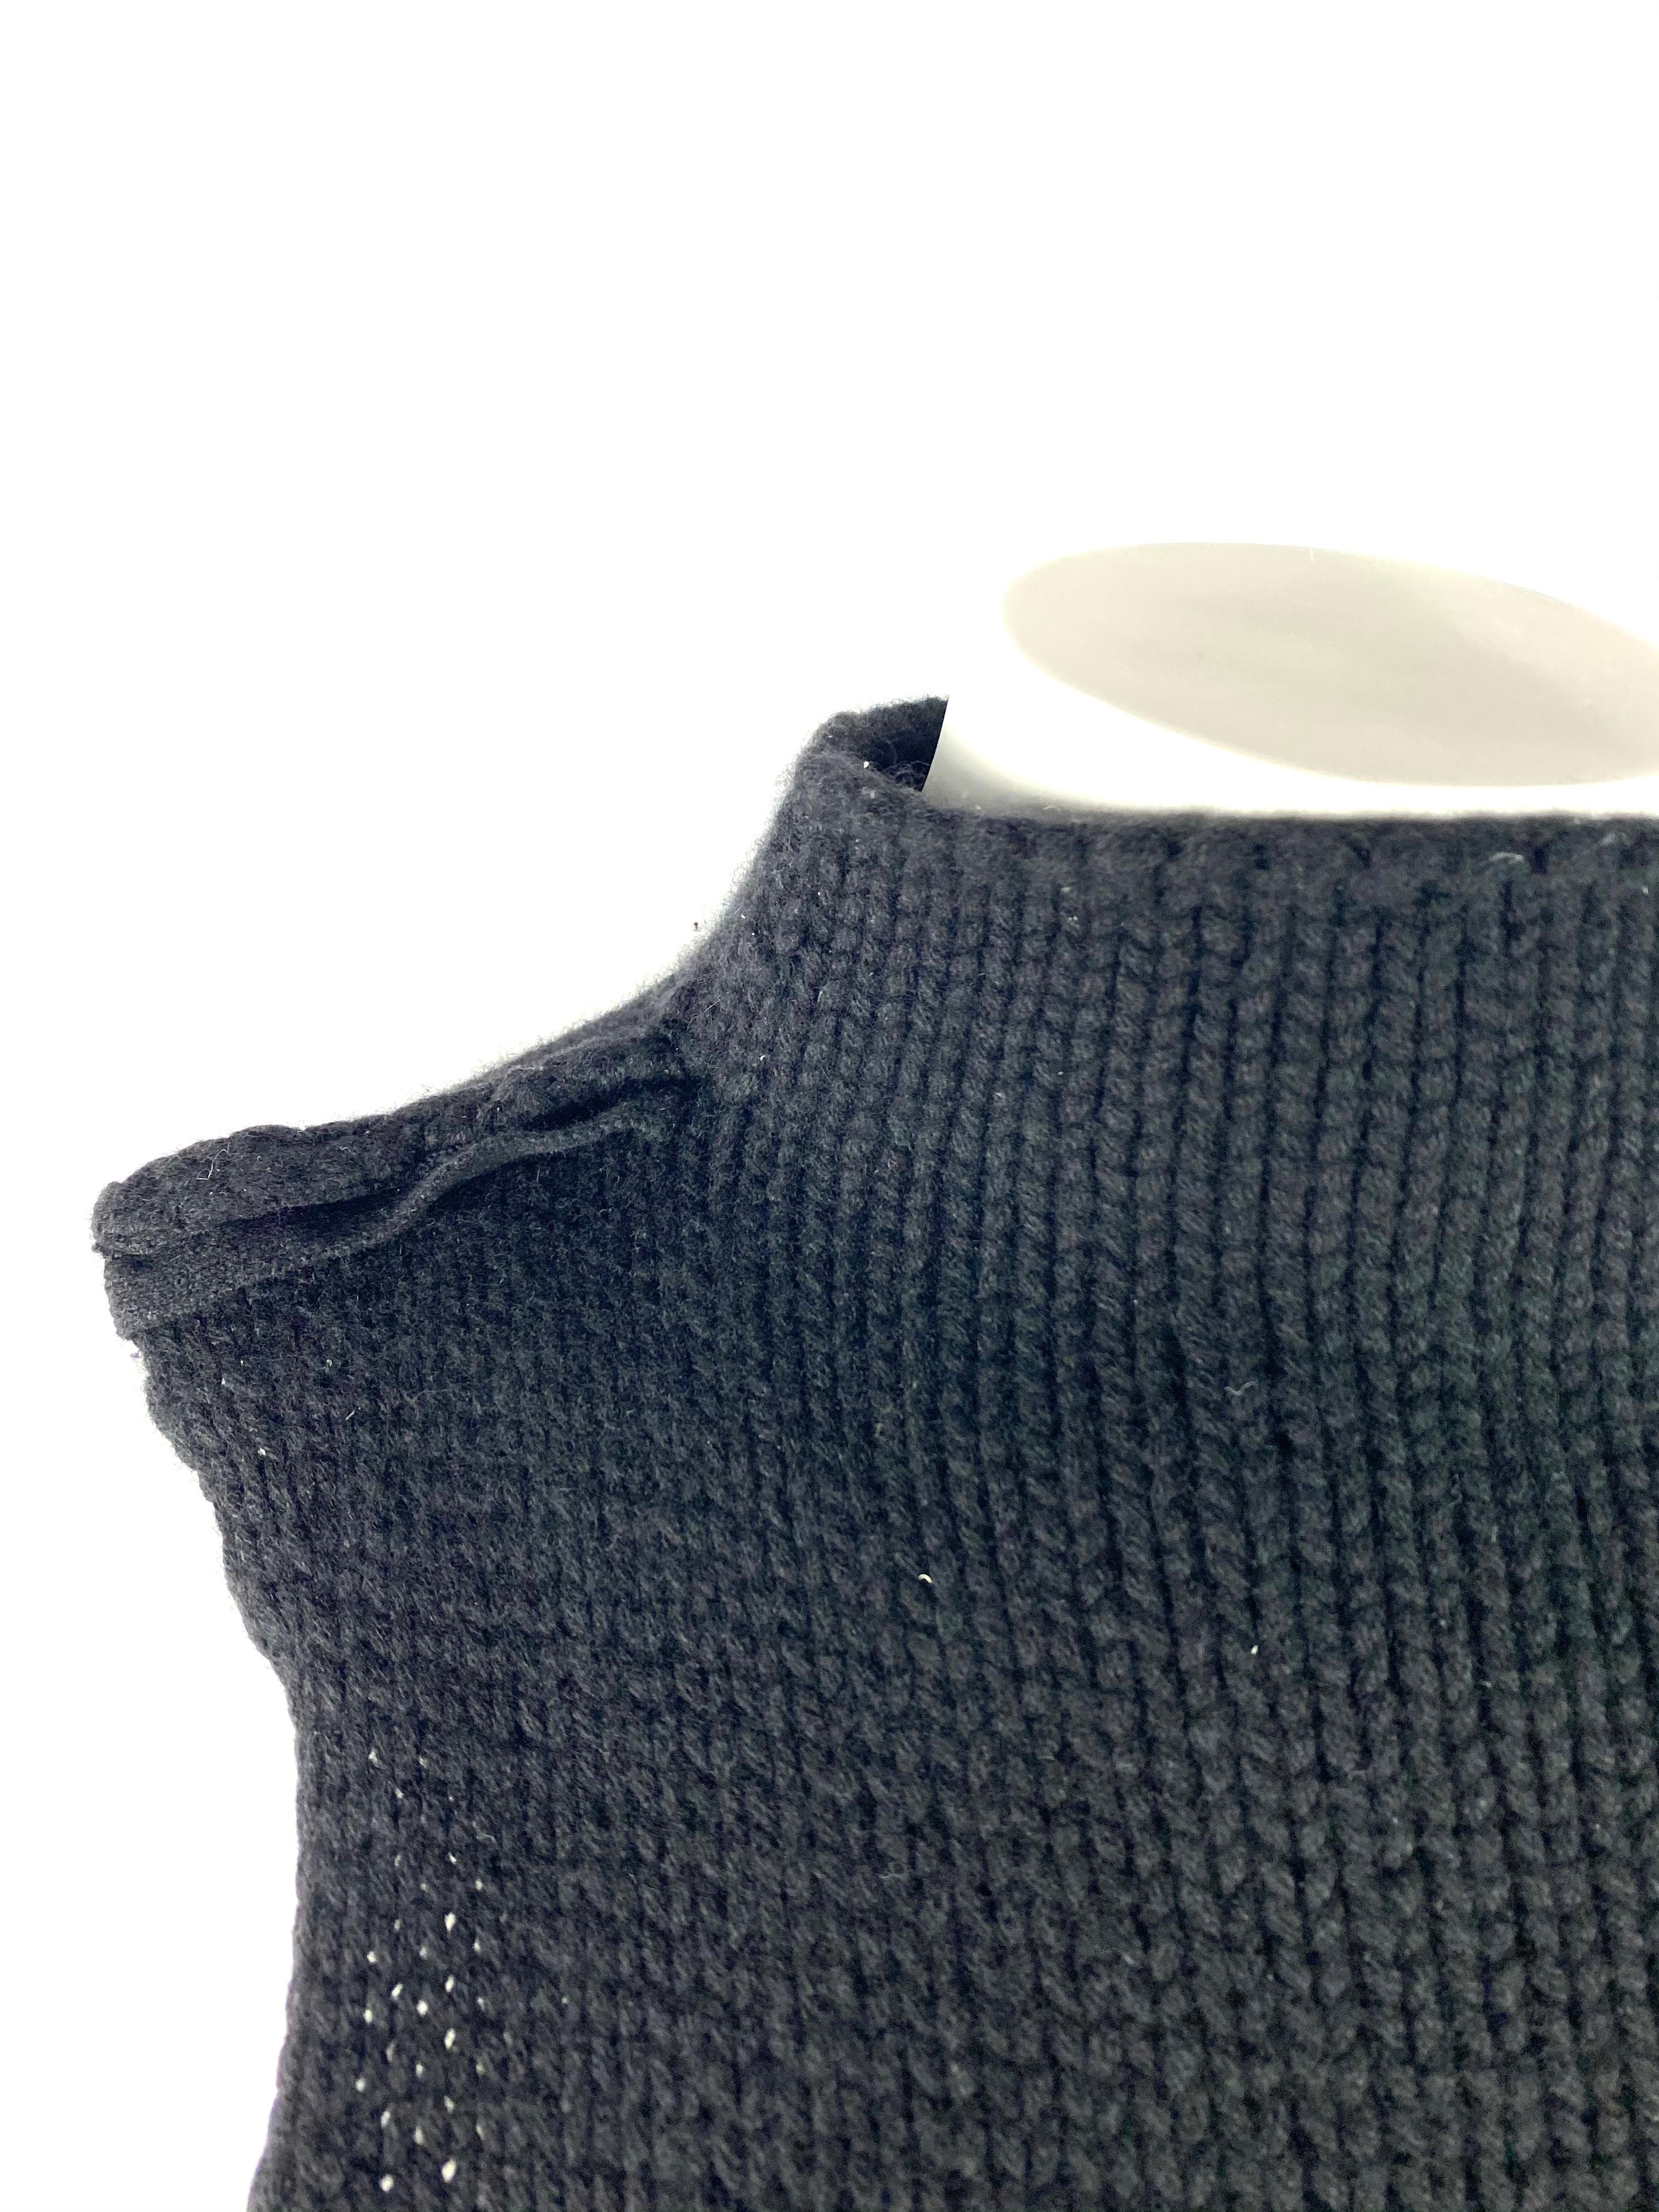 Détails du produit :

Un gilet sans manches, à col roulé, en laine et cachemire mélangés, conçu par Calvin Klein.
Les étiquettes sont manquantes.
Taille estimée par les mesures.